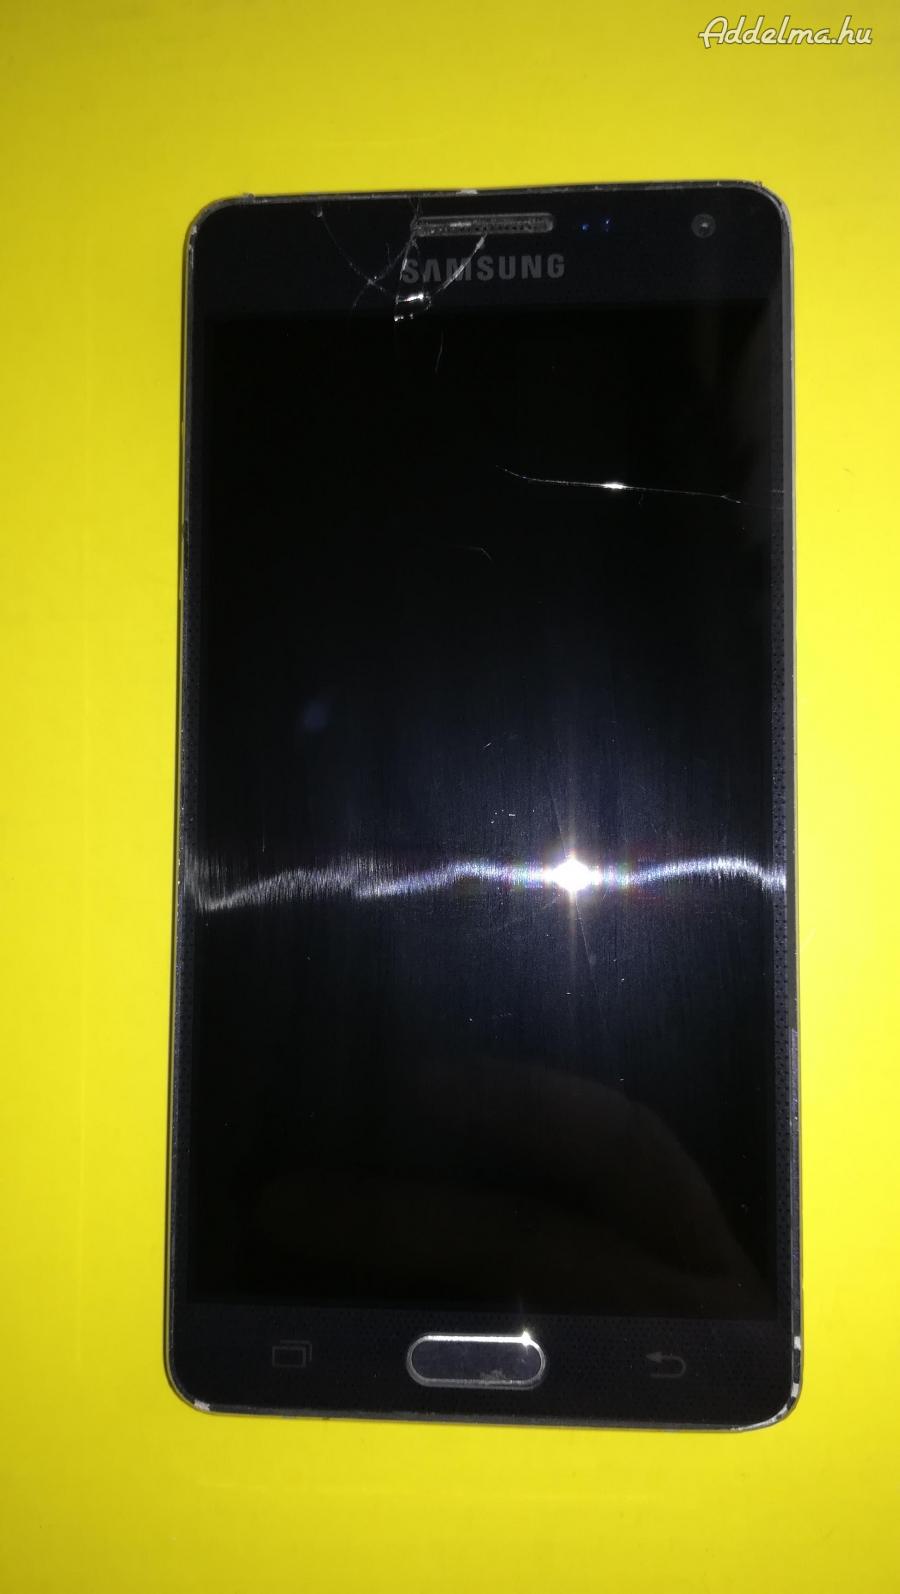 Samsung galaxy A5 mobil eladó Kijelzője törött, c